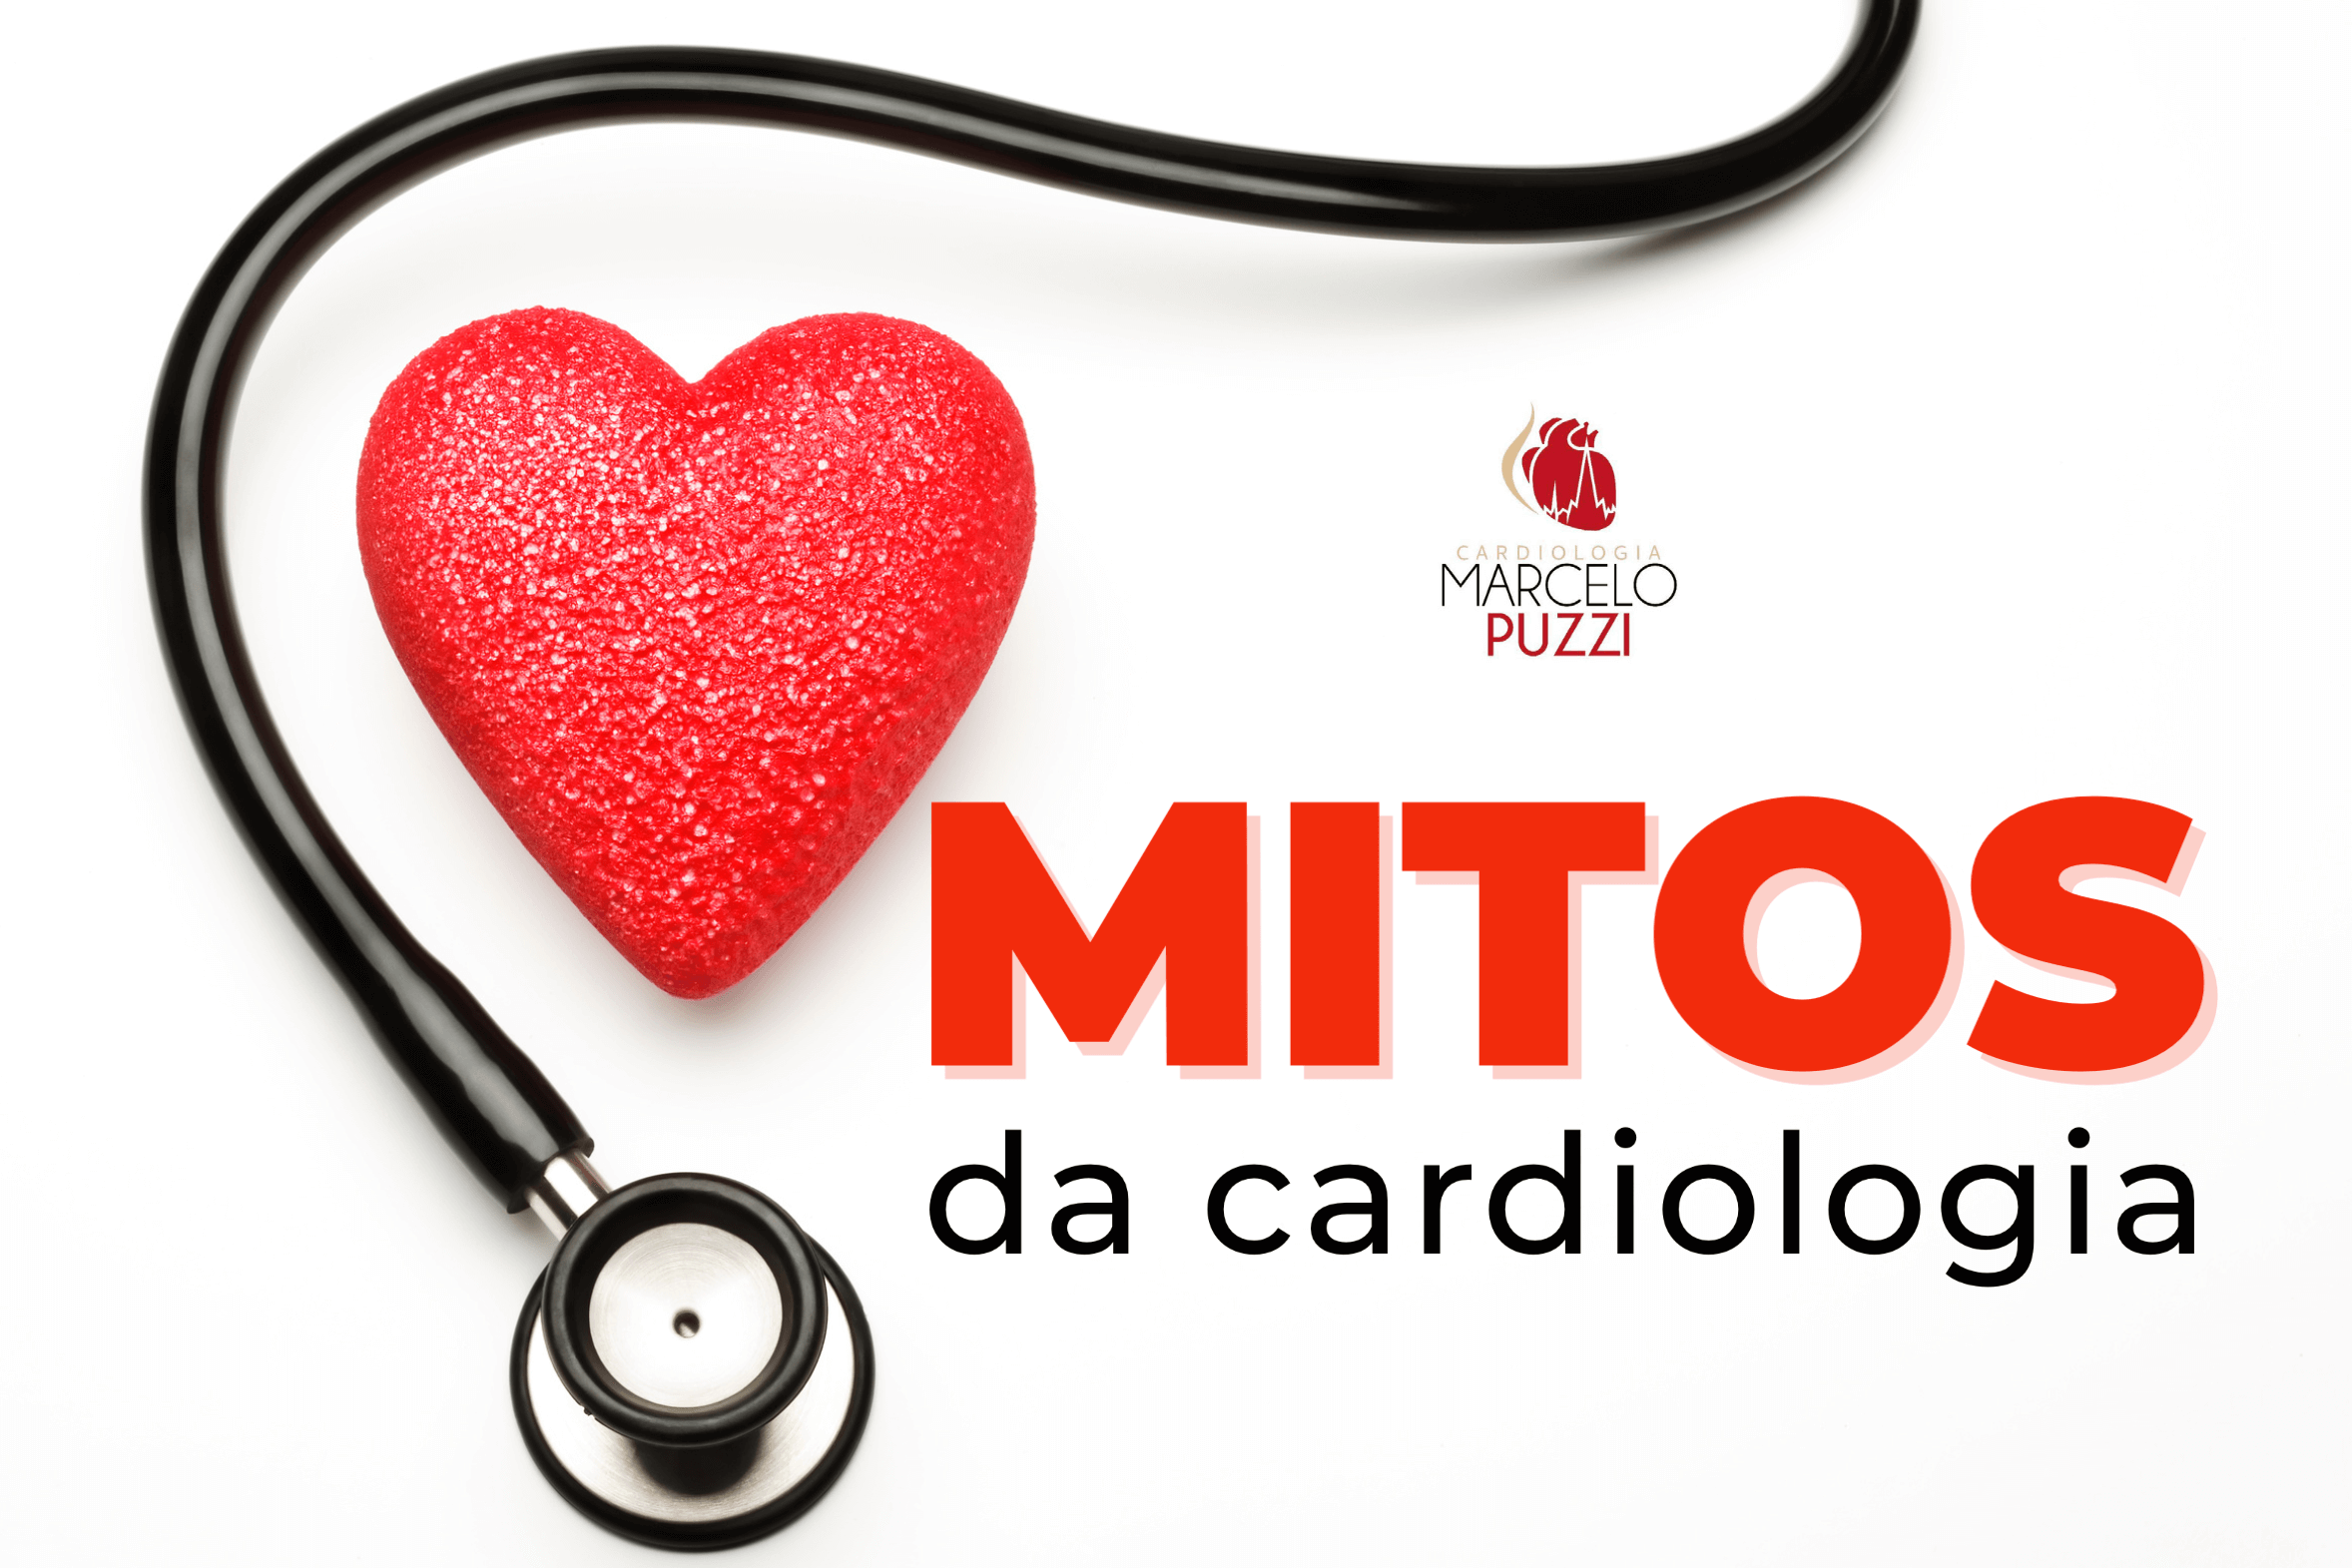 Mitos da cardiologia